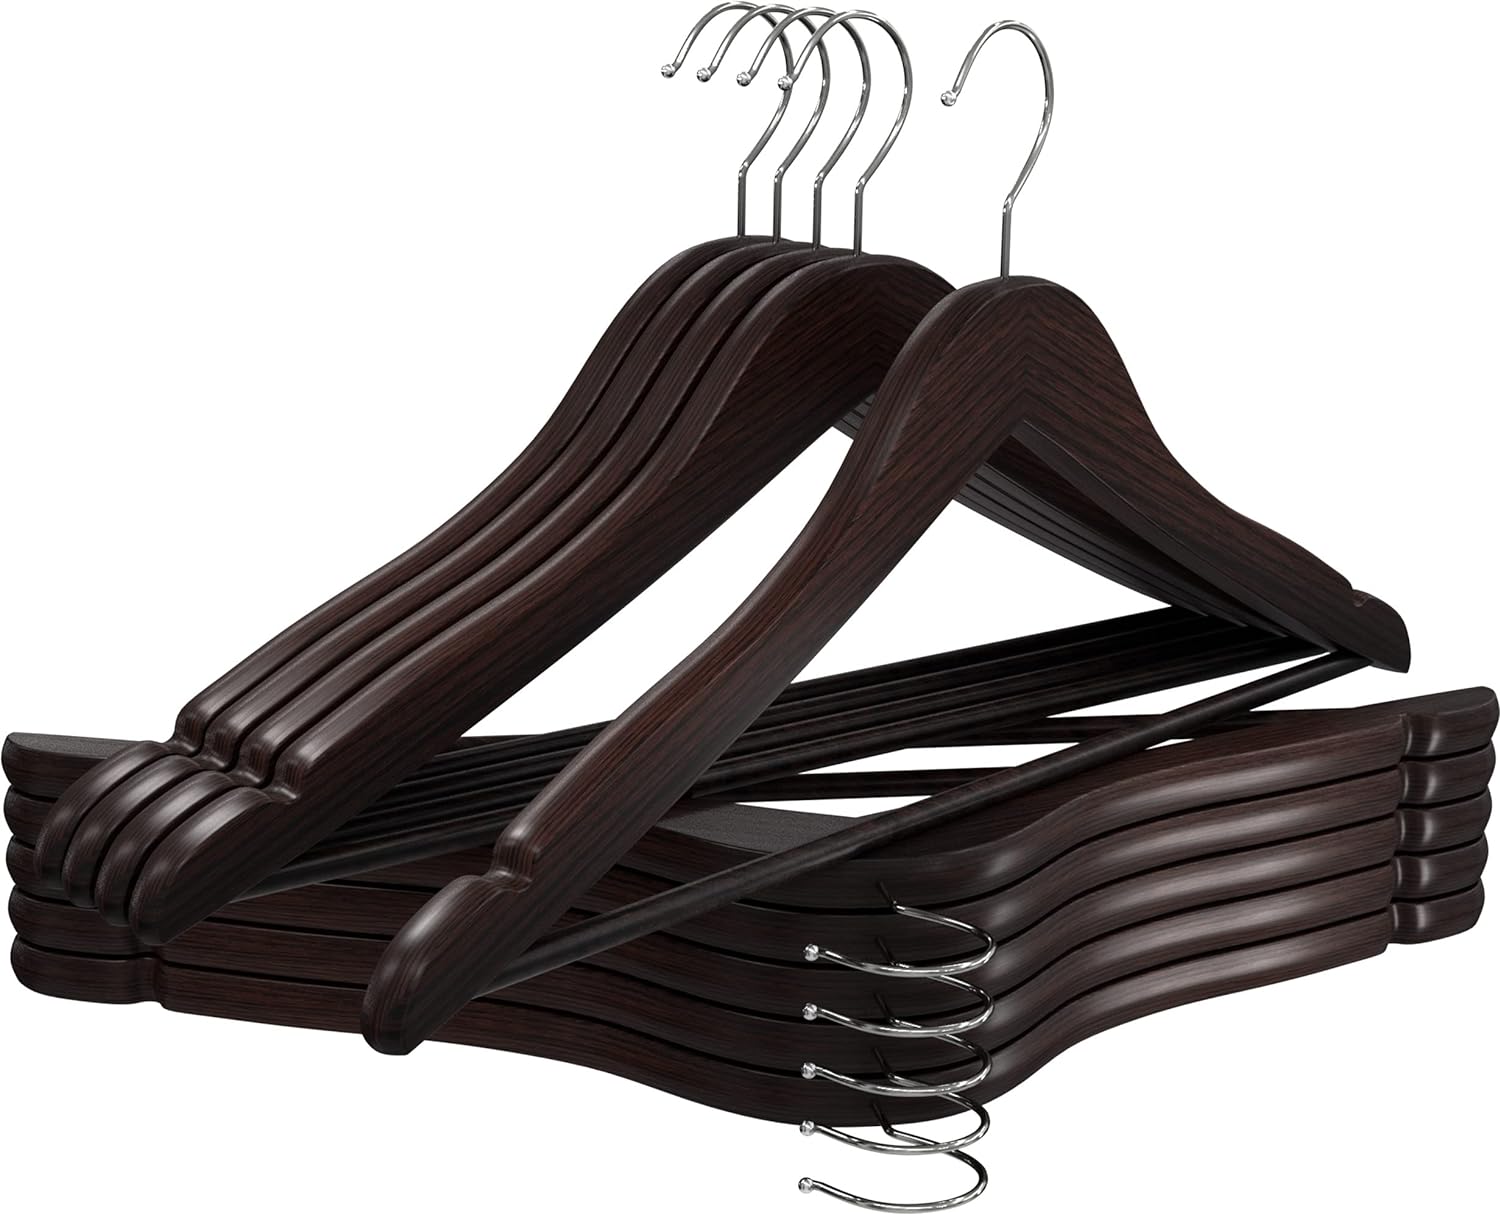 https://bigbigmart.com/wp-content/uploads/2023/12/Utopia-Home-Premium-Wooden-Hangers-80-Pack-Durable-Slim-Coat-Hanger-Suit-Hangers-with-360-Degree-Rotatable-Hook-Wood-Hangers-with-Shoulder-Grooves-Brown-Color6.jpg